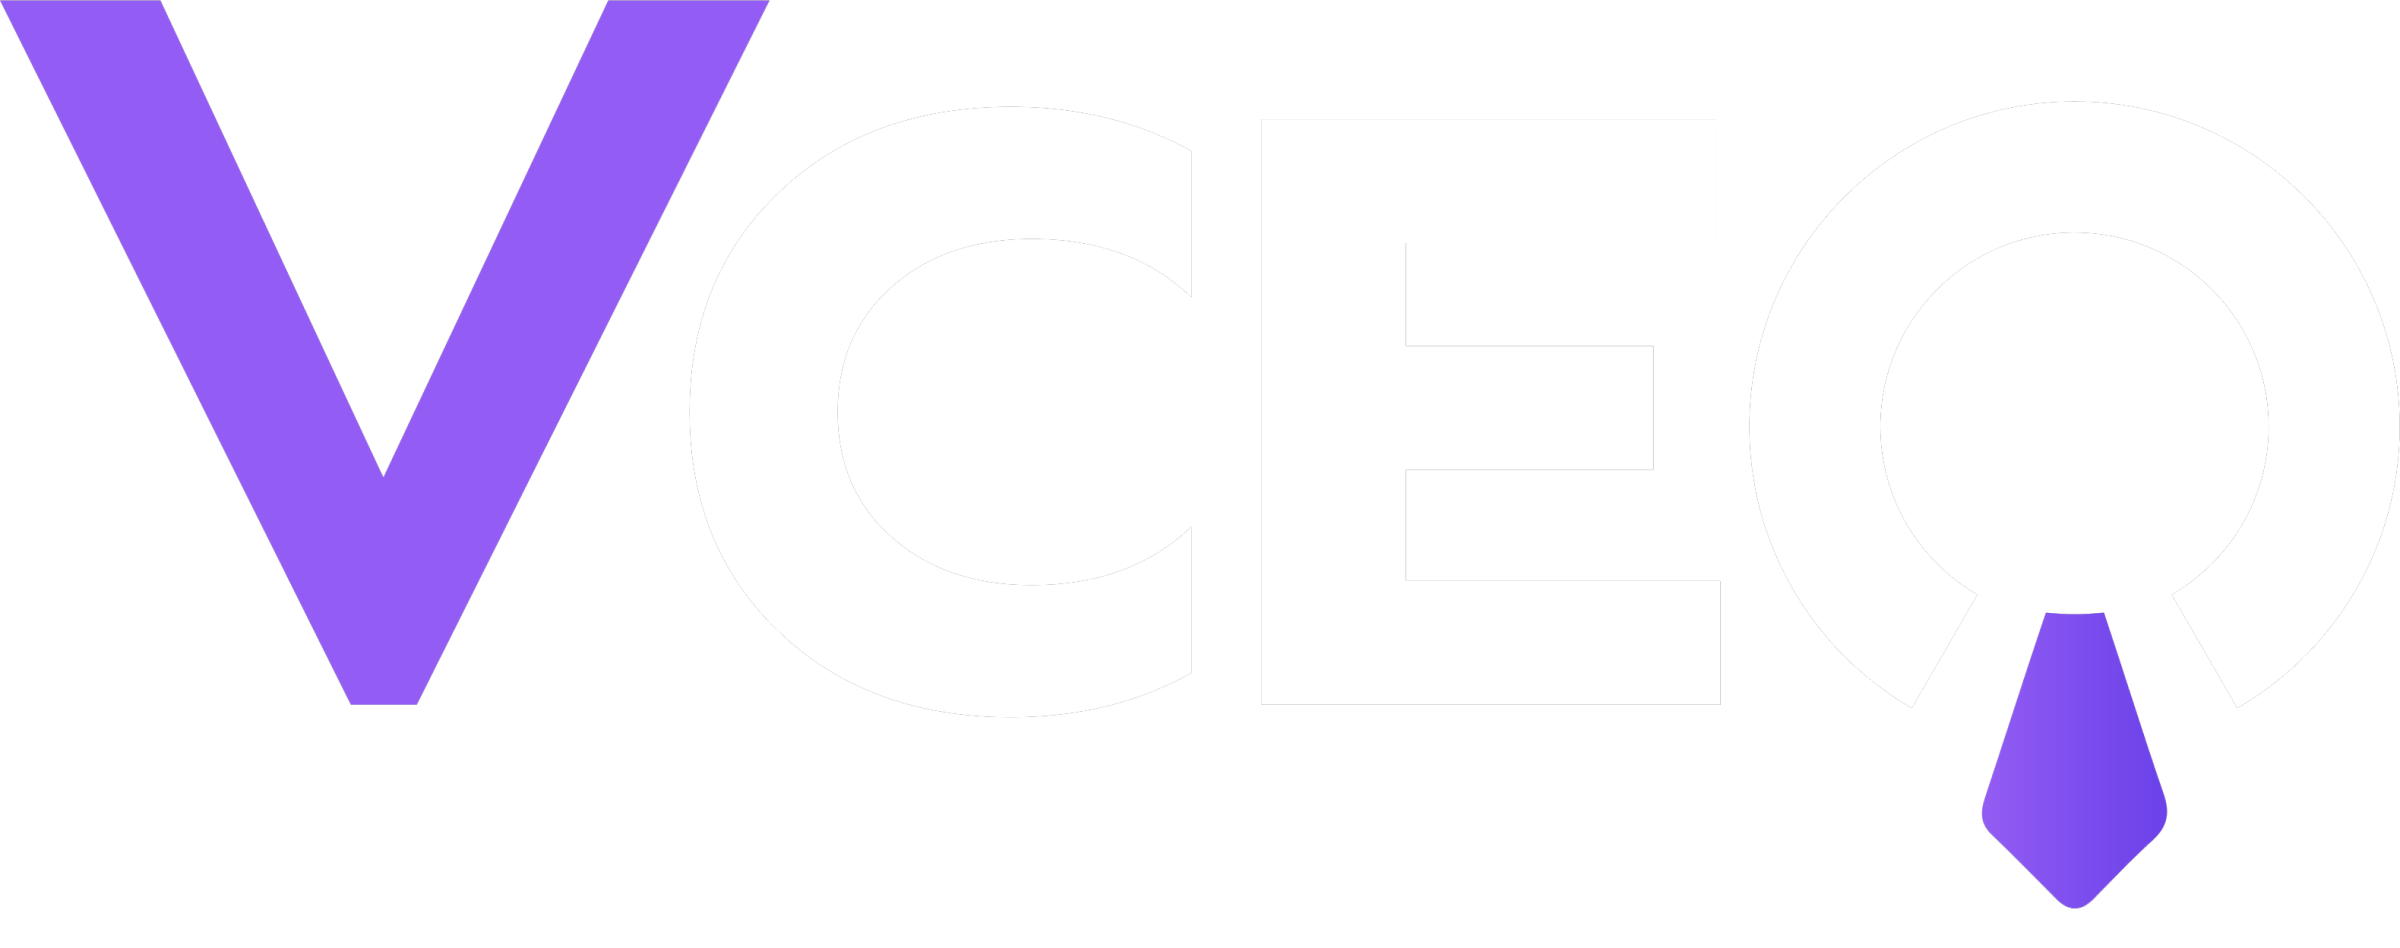 vceo logo